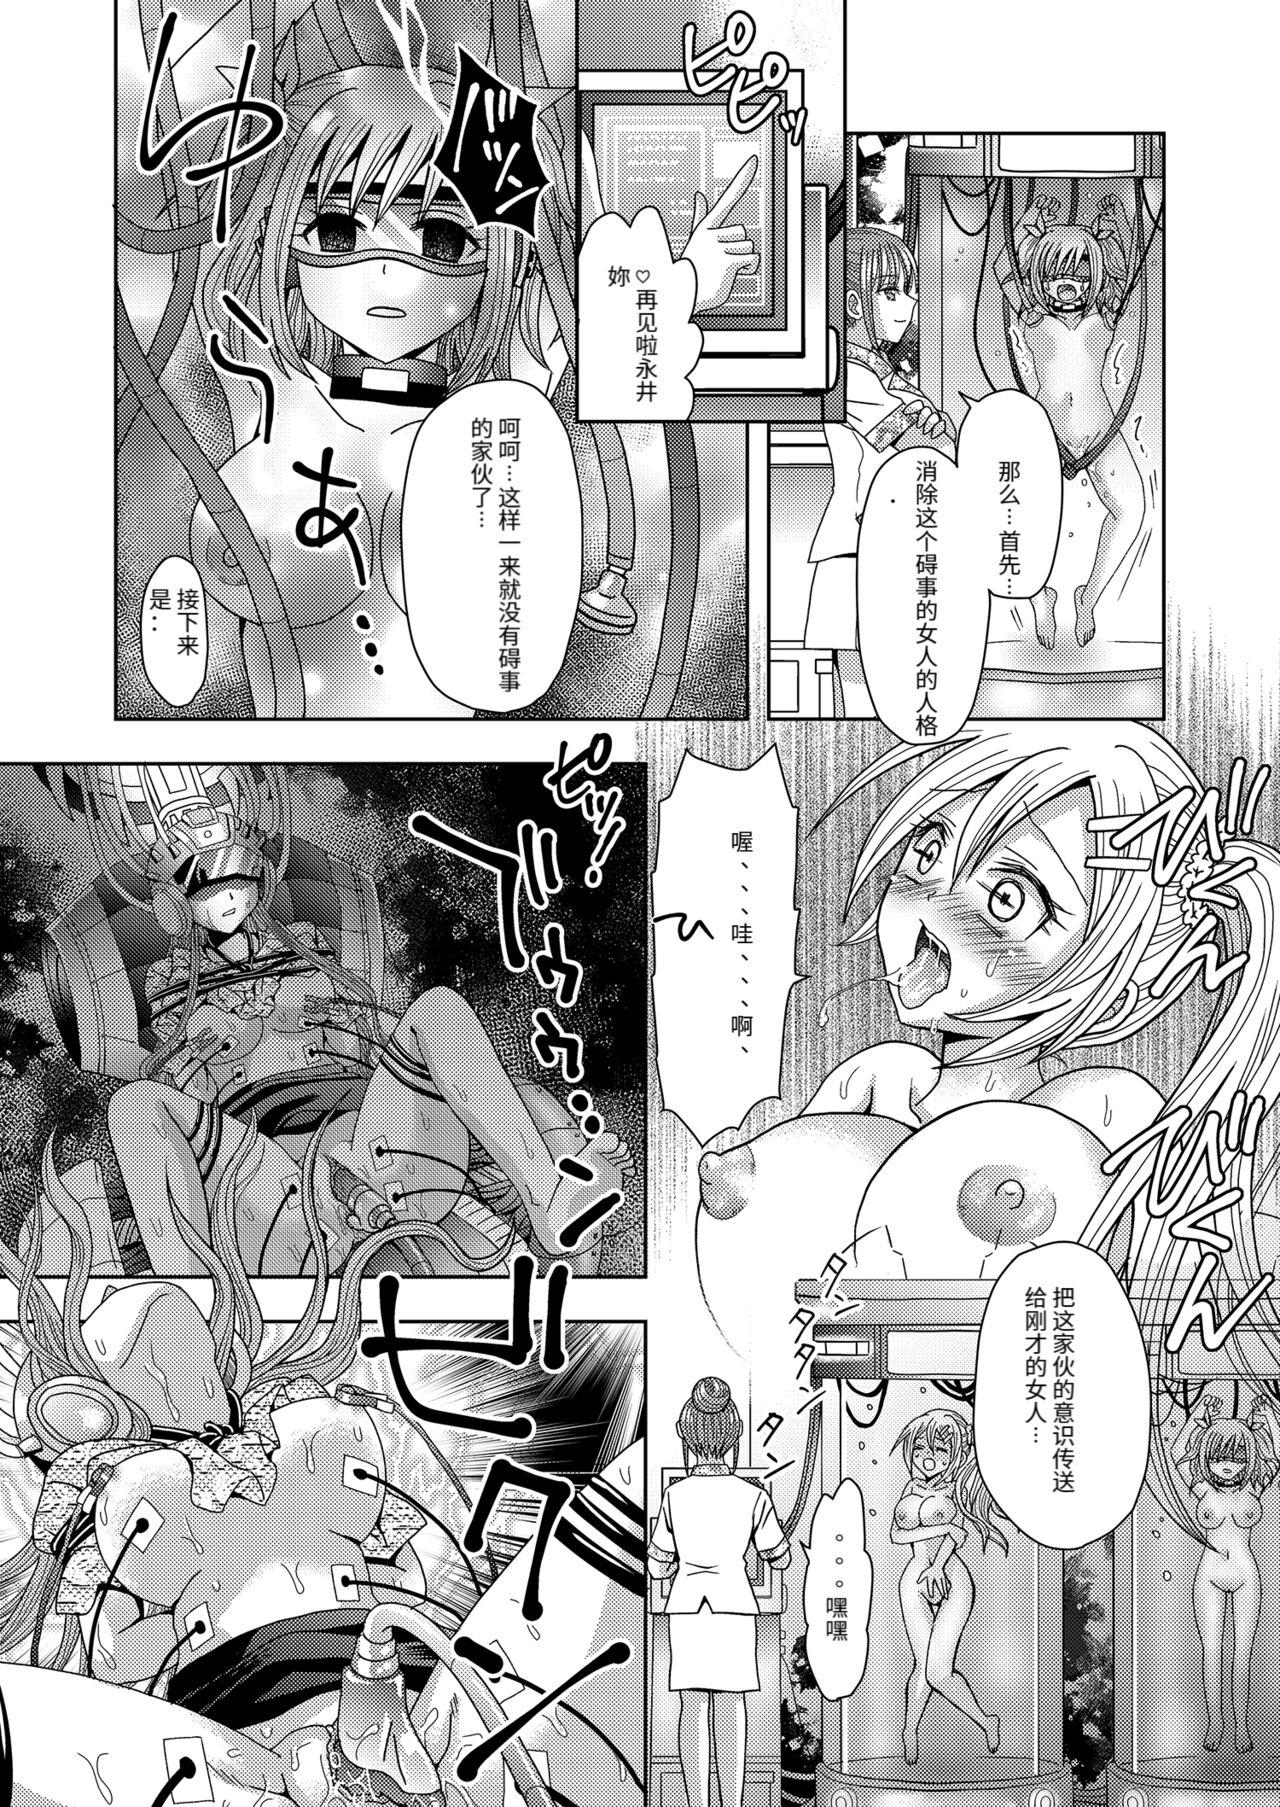 Short Ore ga Watashi ni Naru Tame no Biyou Salon 3 - Original Stretching - Page 7